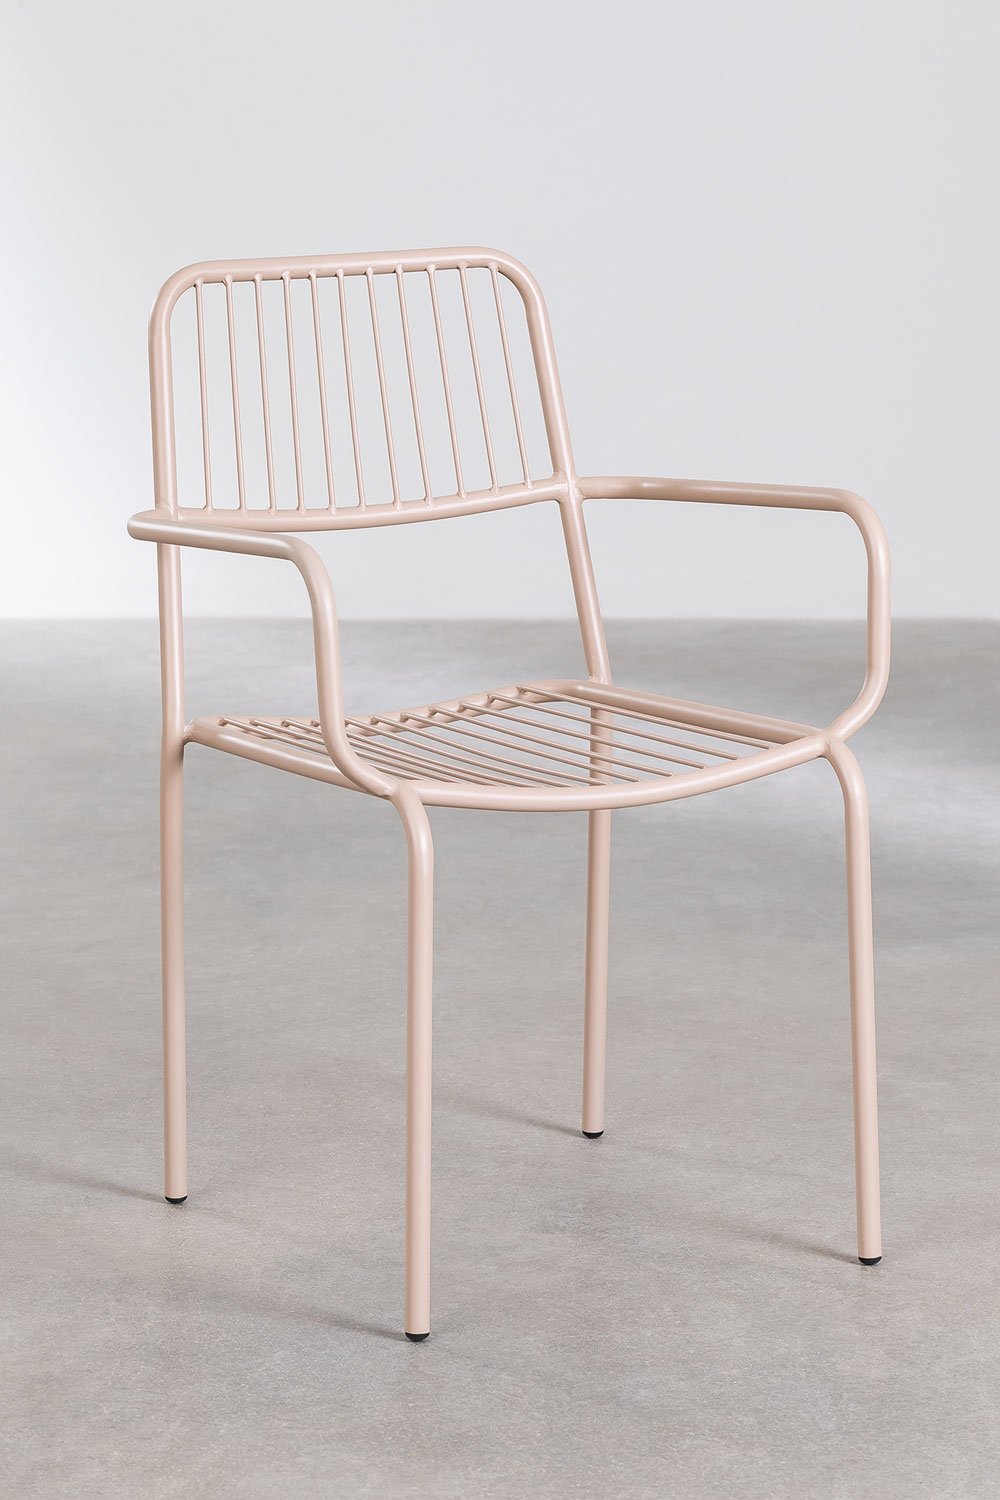 Confezione da 4 sedie da giardino impilabili con braccioli Elton, immagine della galleria 1